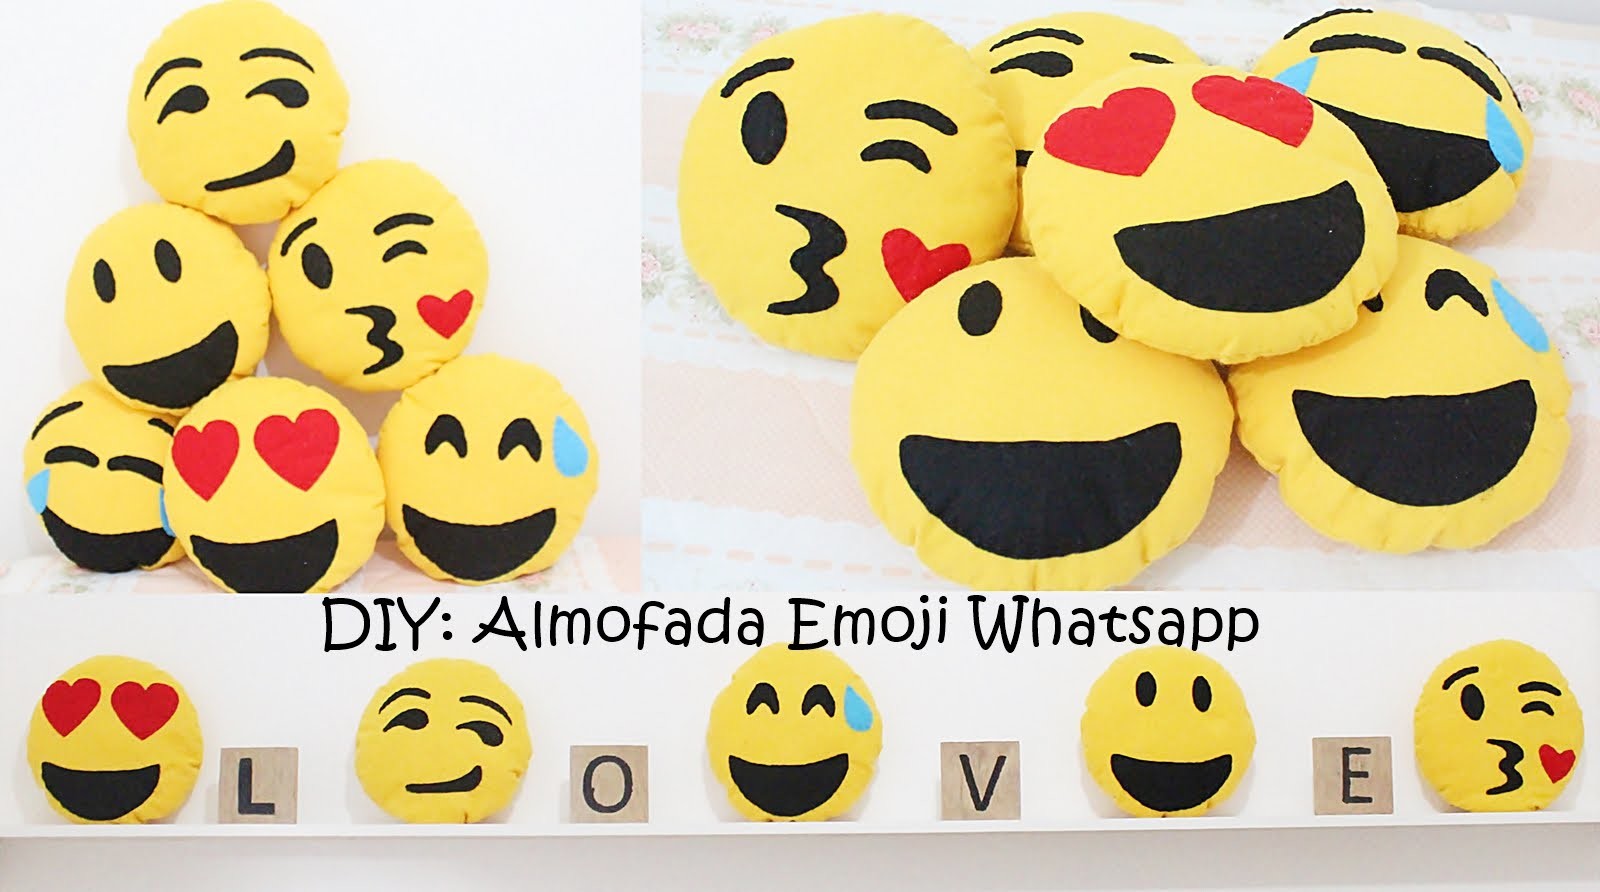 DIY Almofada Emoji do Whatsapp - Muito Fácil